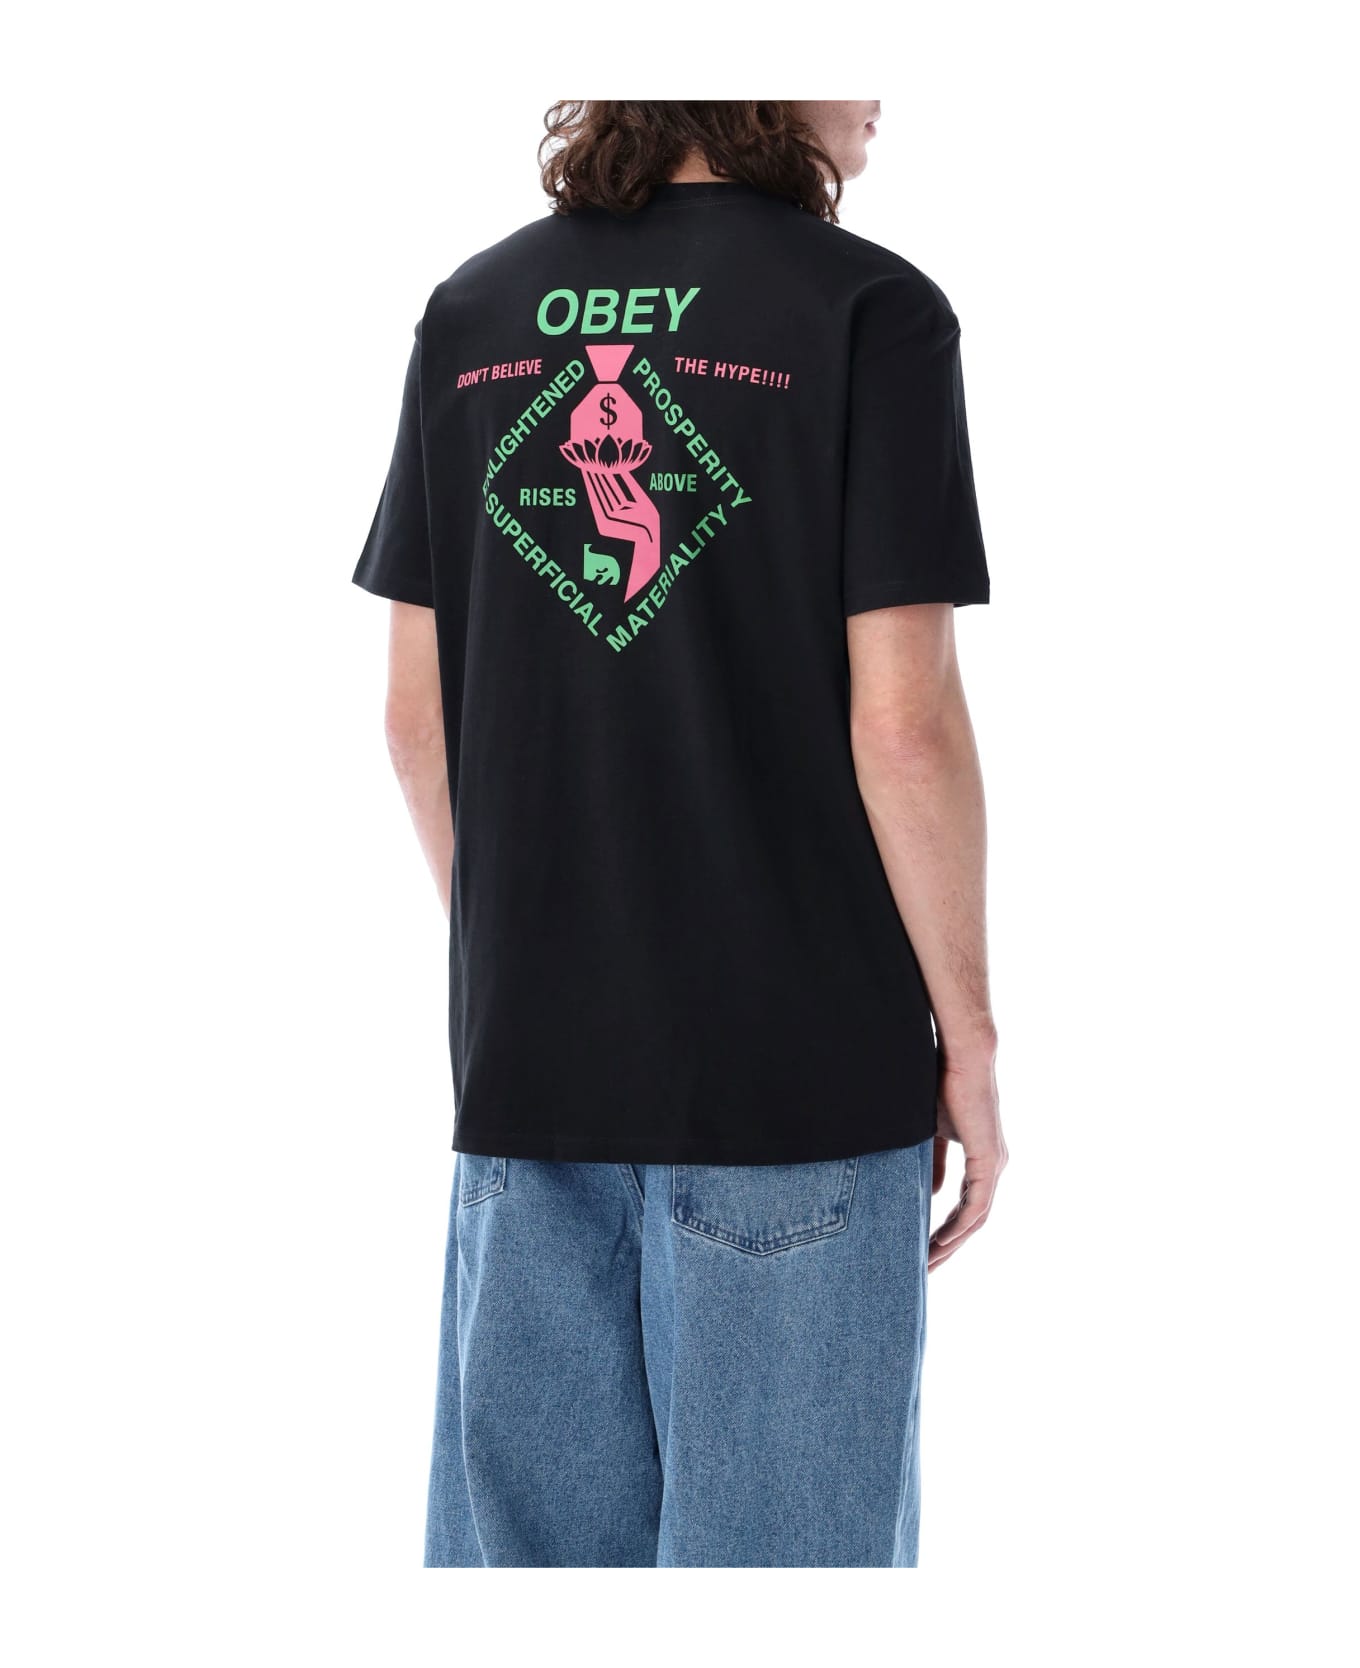 Obey Spiritually Rich T-shirt - BLACK